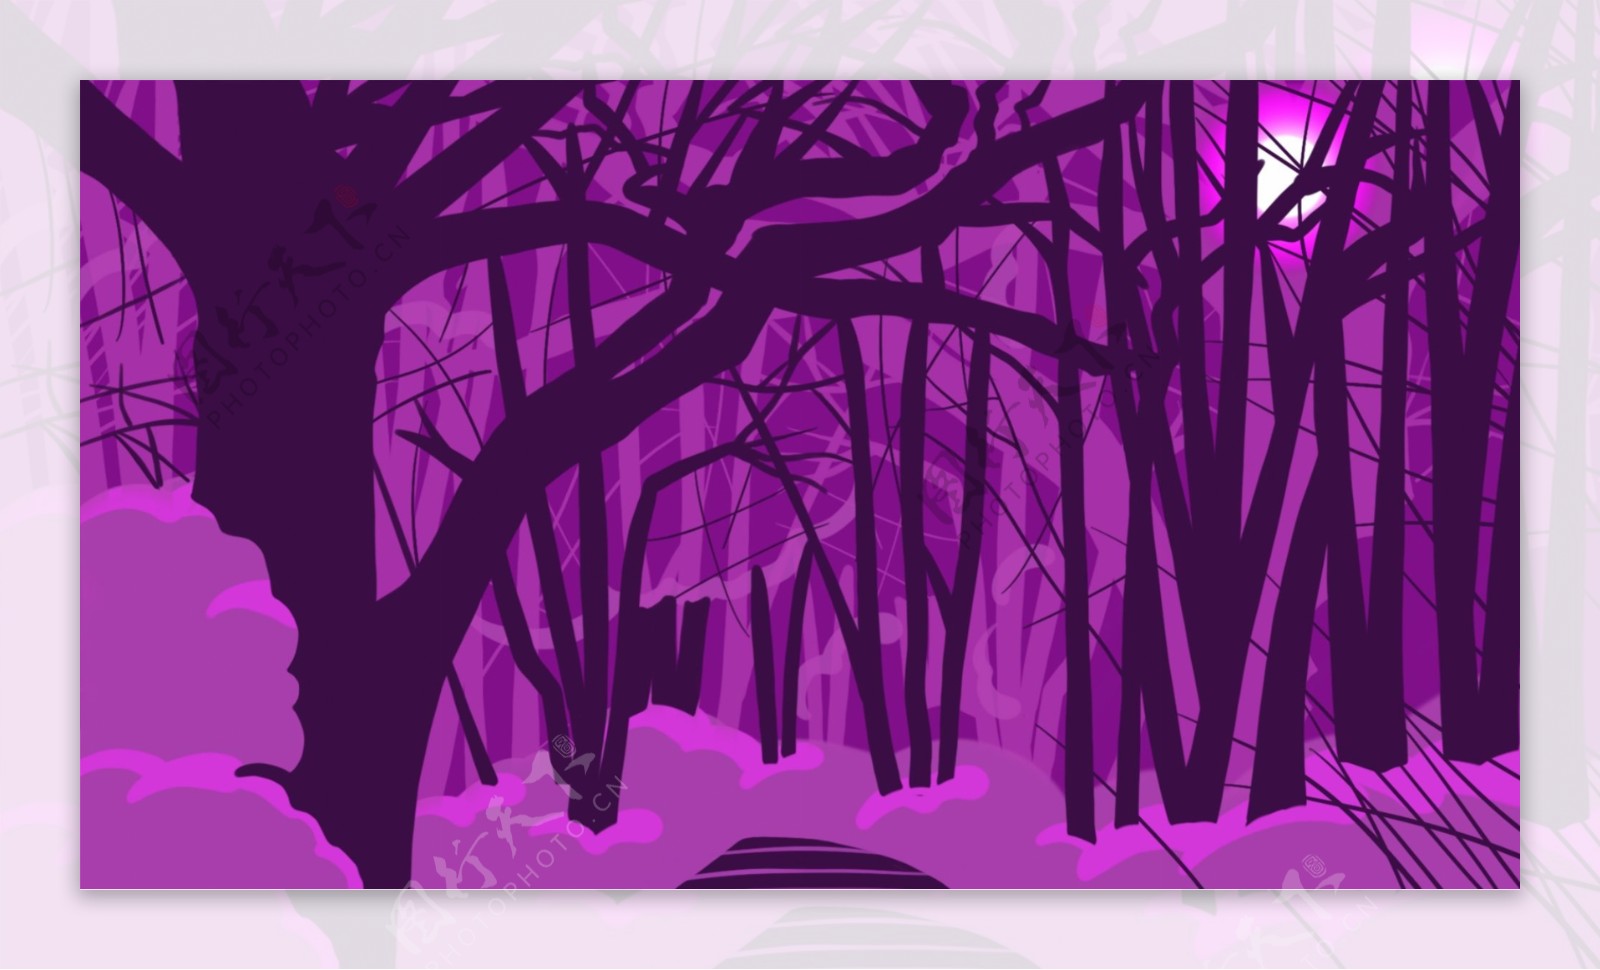 紫色系魔幻森林背景素材